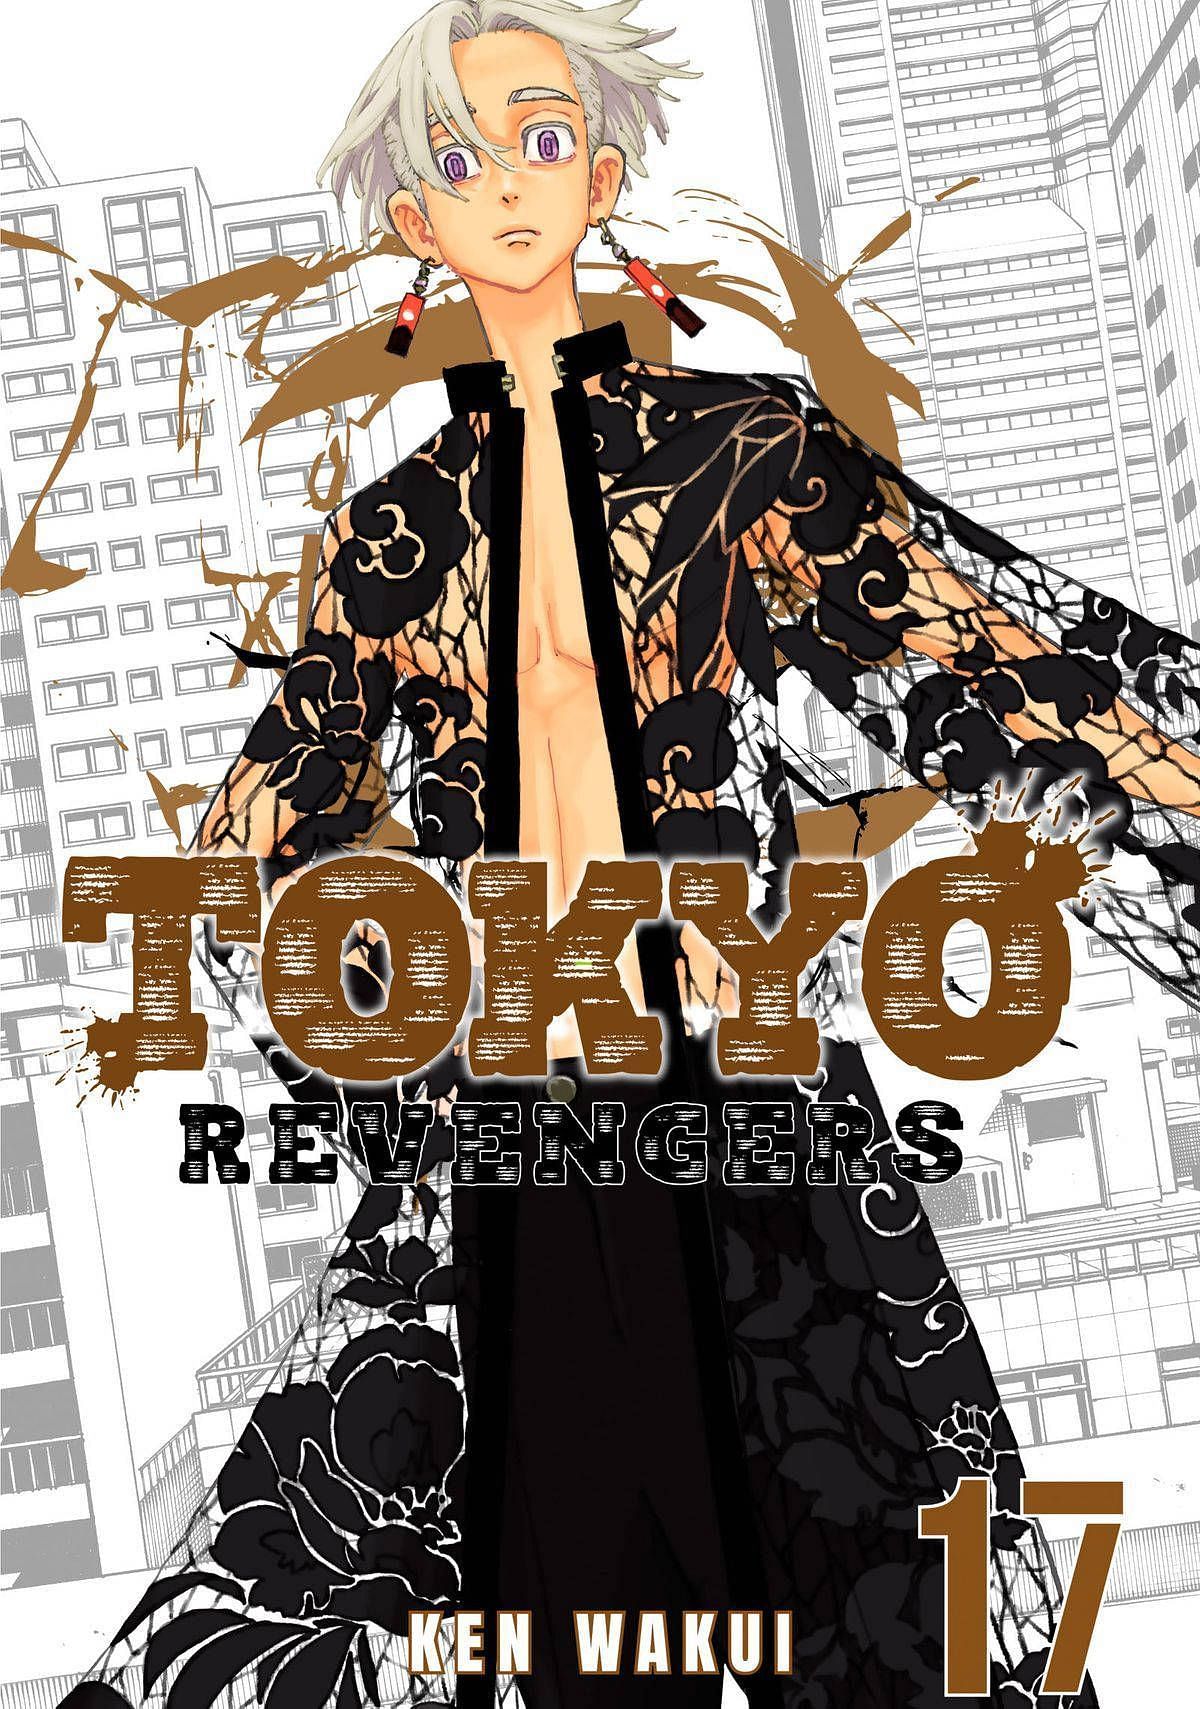 Tokyo Revengers (Image via Ken Wakui)